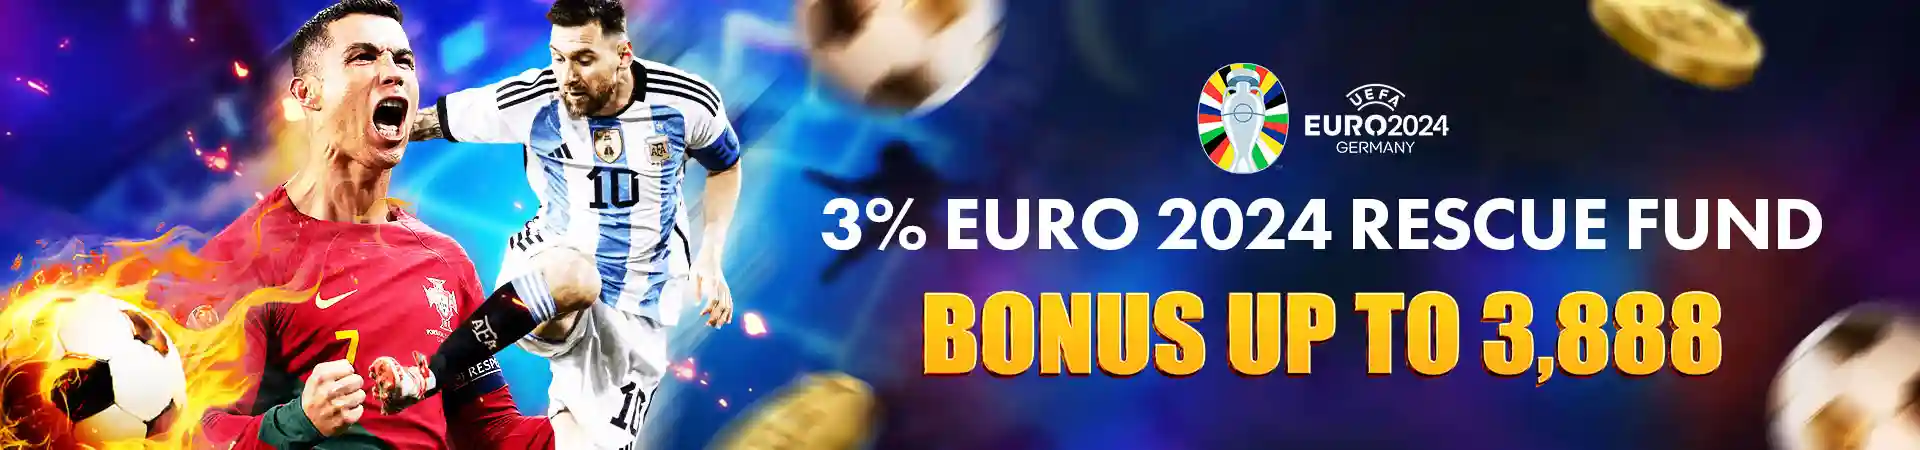 3% Euro 2024 Rescue Bonus